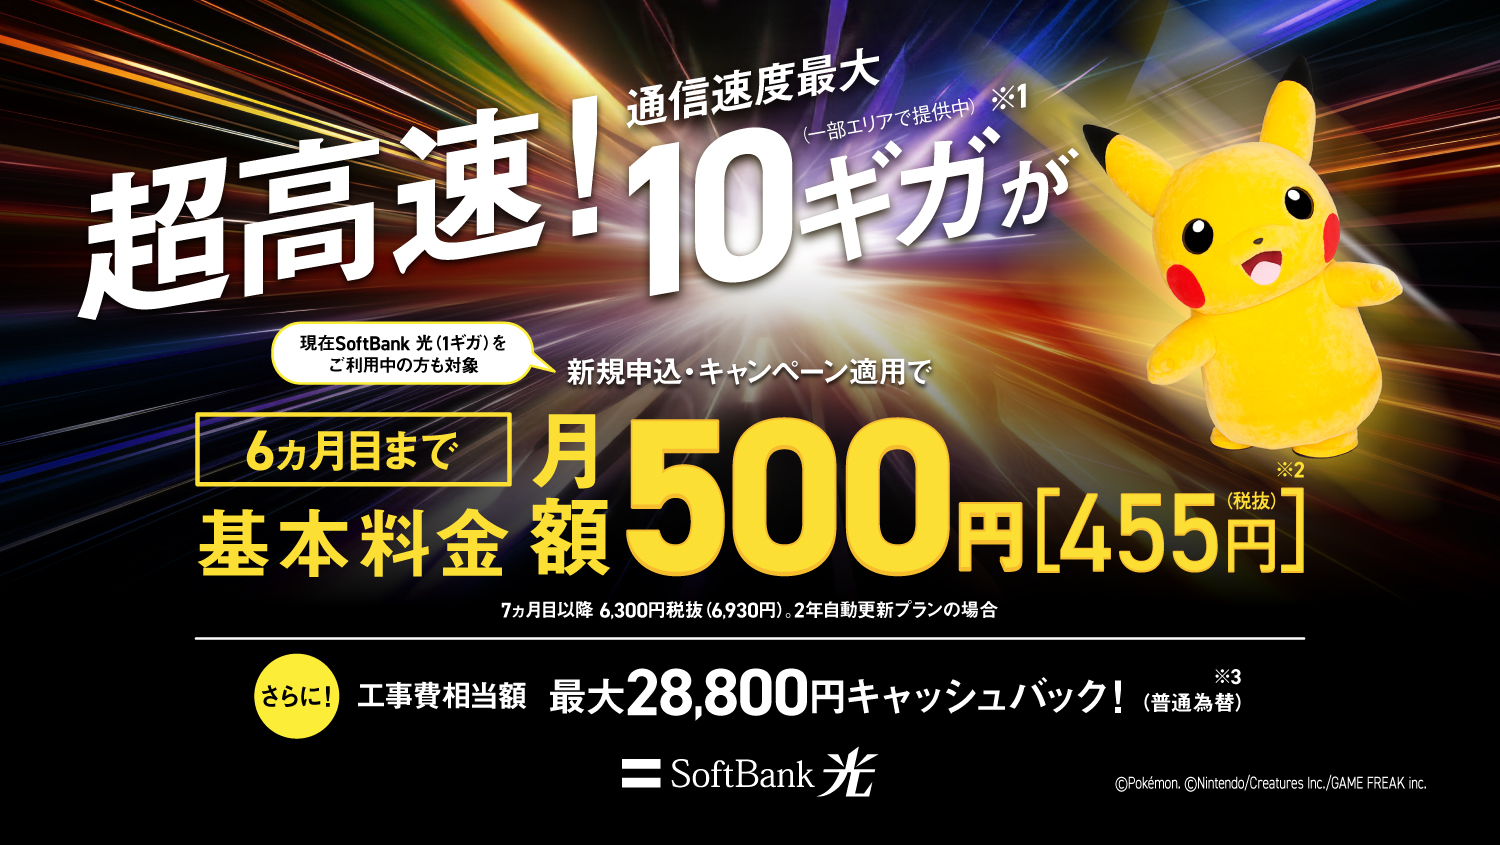 SoftBank 光 とにかく速い！安い！　現在SoftBank 光（1ギガ）をご利用中の方も対象　新規申込・キャンペーン適用で基本料金＋ホームゲートウェイ(N)　通信速度最大10ギガ（一部エリア提供中）※1　6ヵ月目まで月額500円※2　SoftBank 光・10ギガ（2年自動更新の場合）　7ヵ月目以降月額で6930円※2　さらに工事費相当額　最大24,000円キャッシュバック！（普通為替）※3